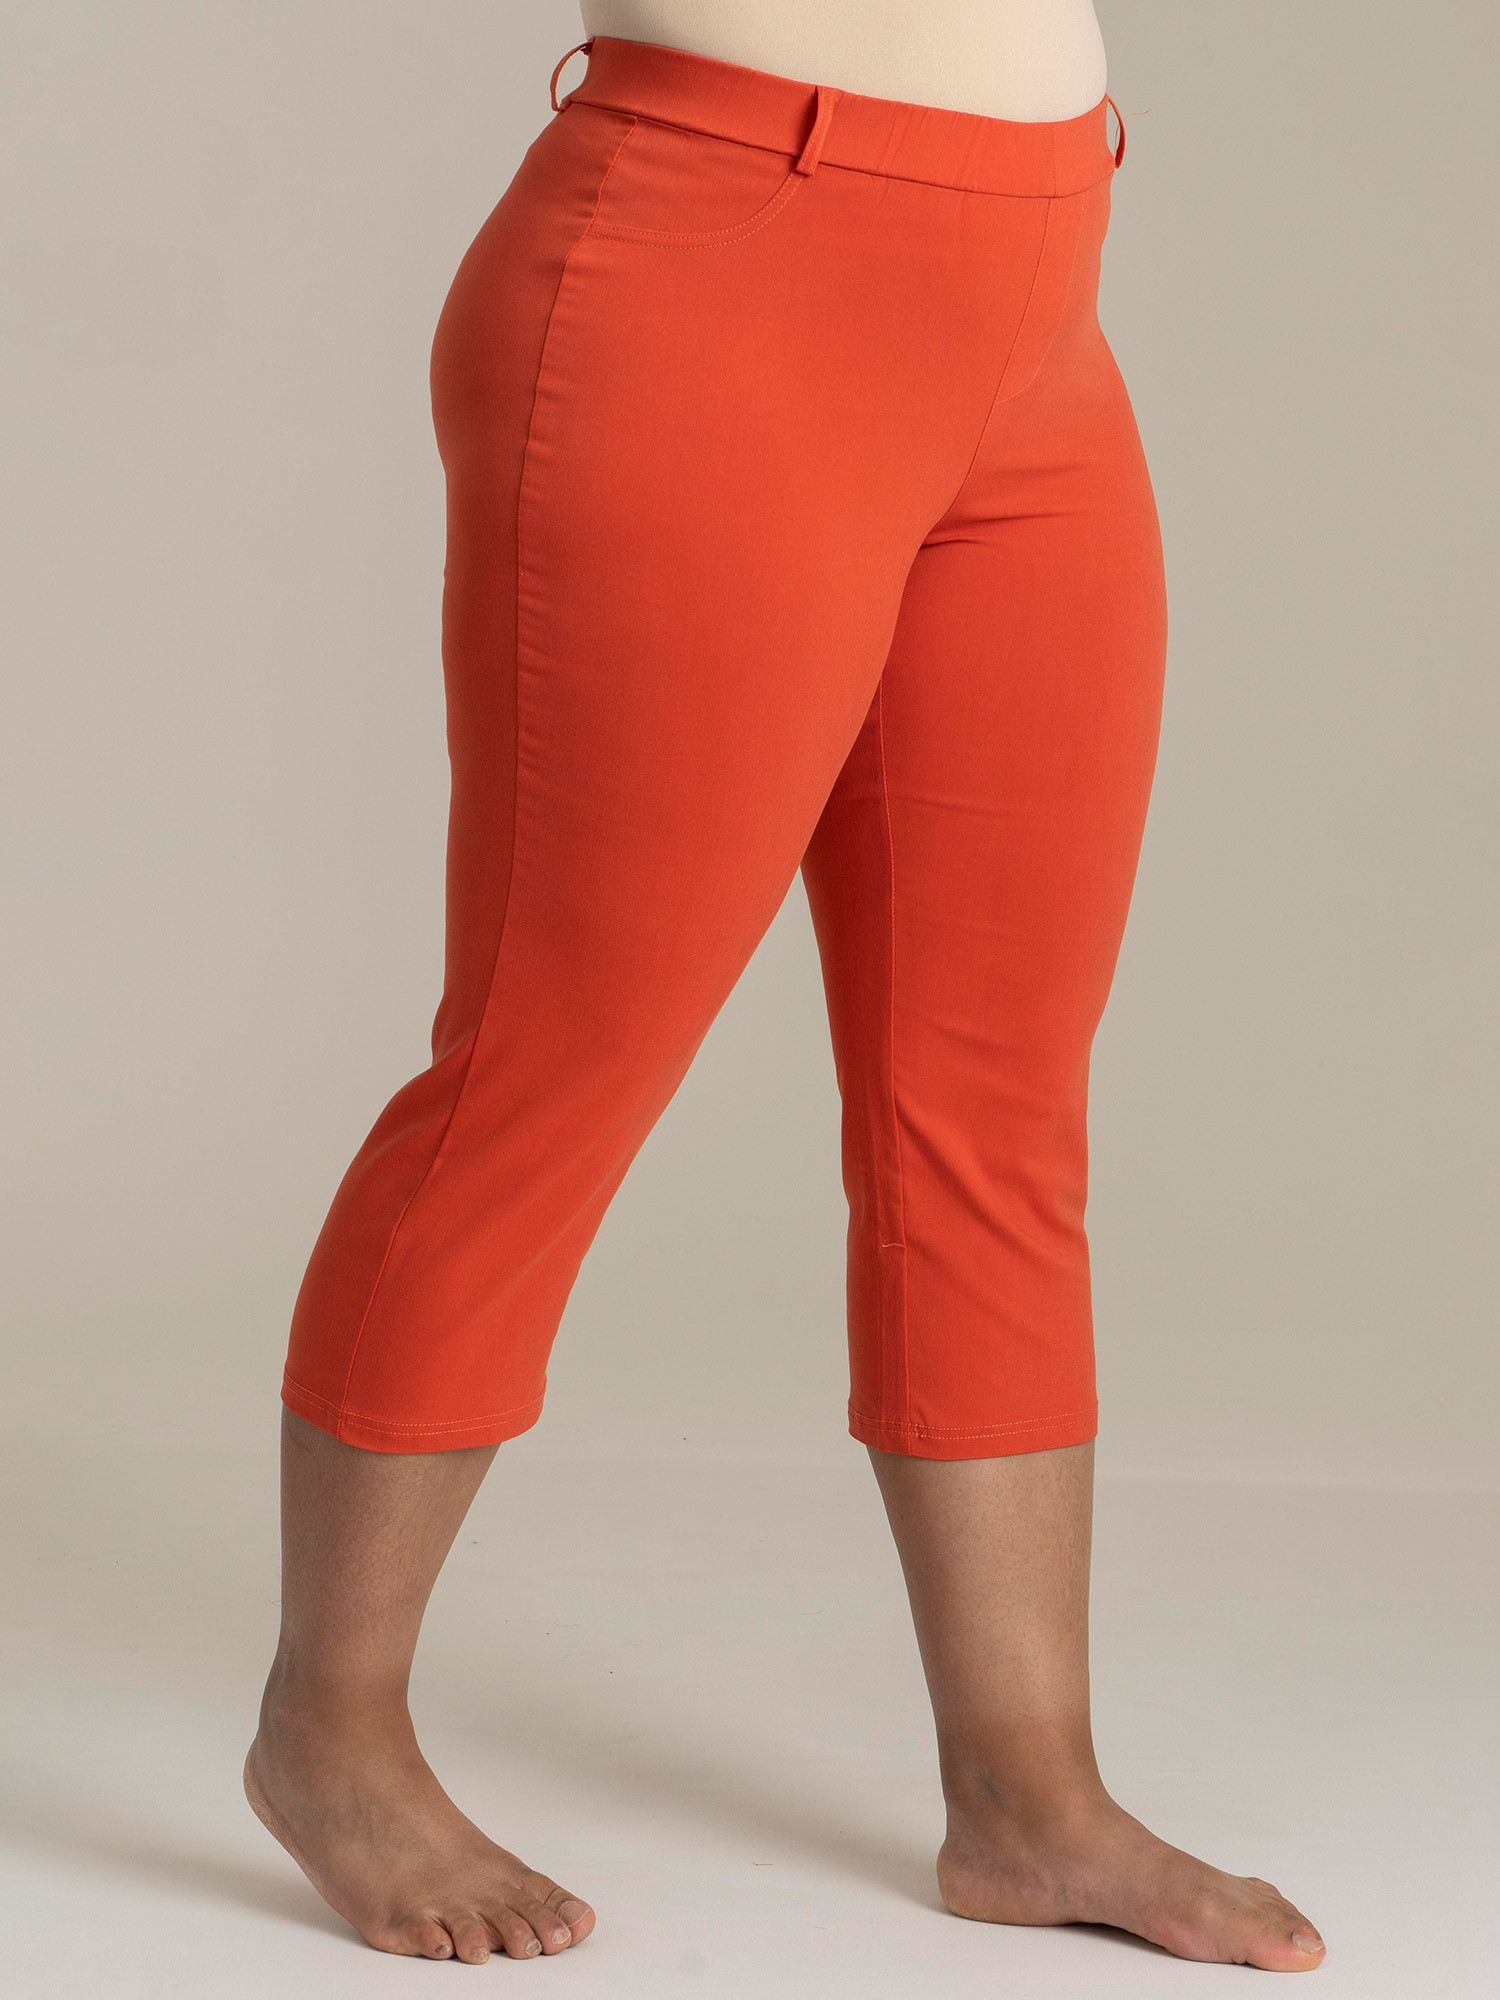 Orange capri leggings